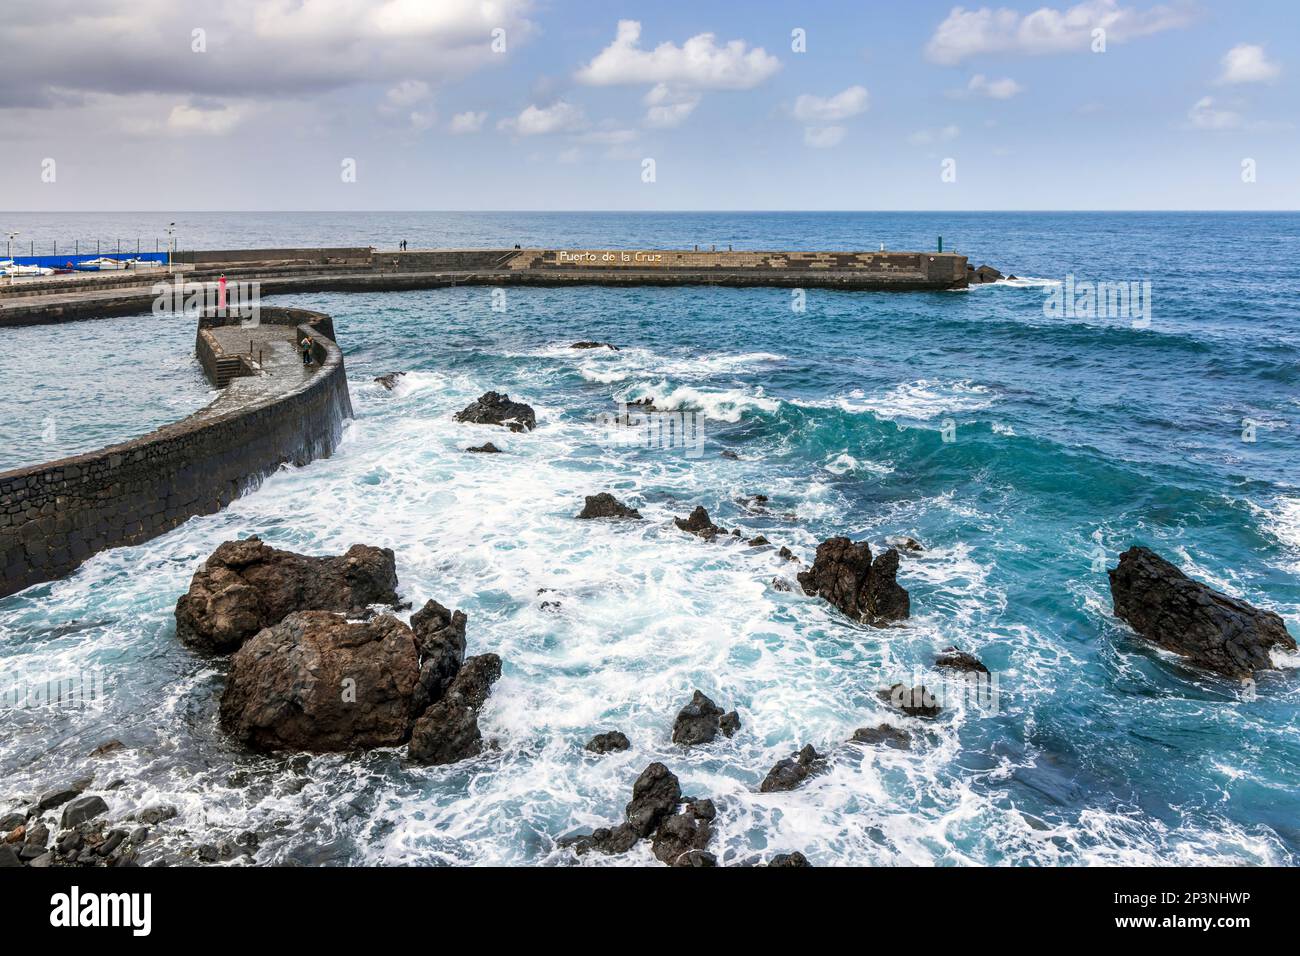 Entrée au port et jetée de pêche à Puerto de la Cruz, au nord de Ténérife, aux îles Canaries. Banque D'Images